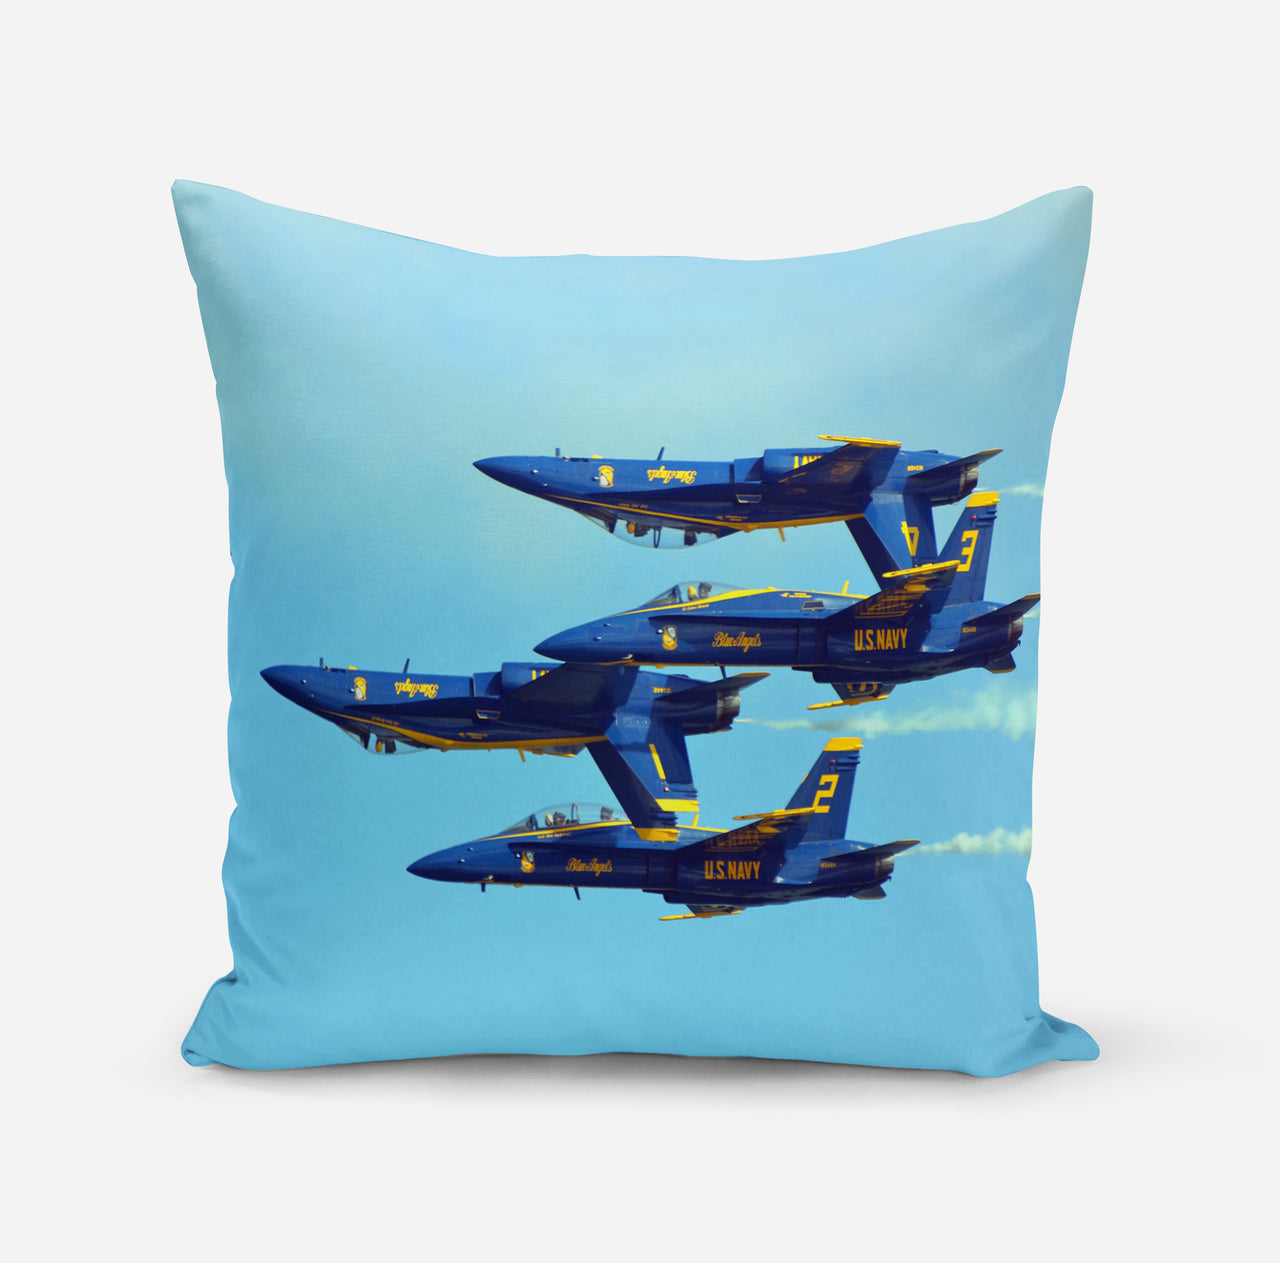 US Navy Blue Angels Designed Pillowsc